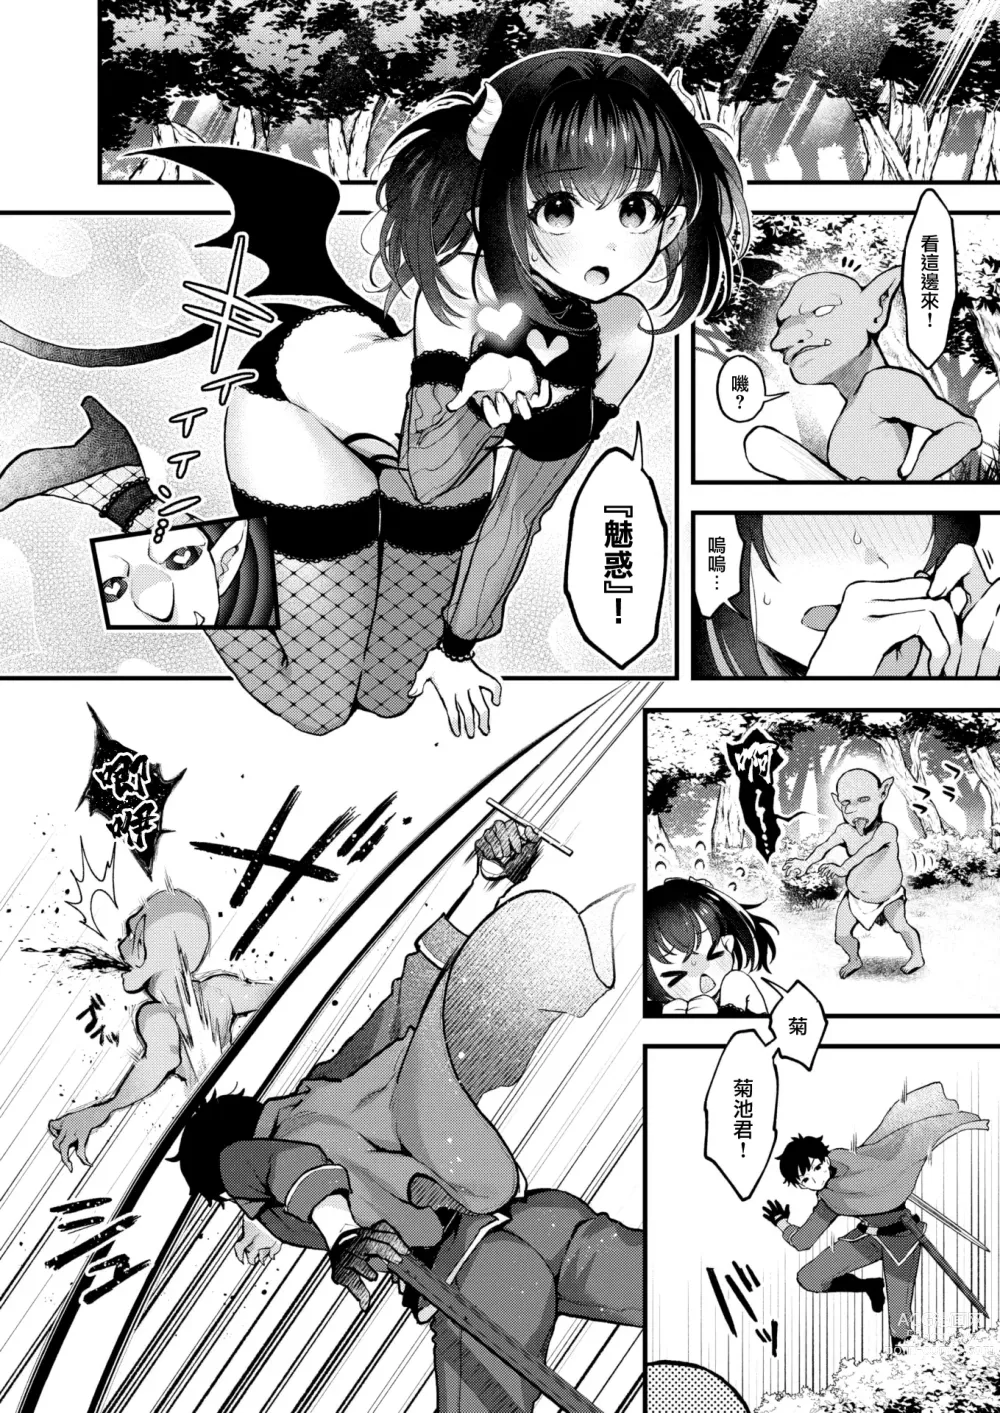 Page 7 of manga Changing!